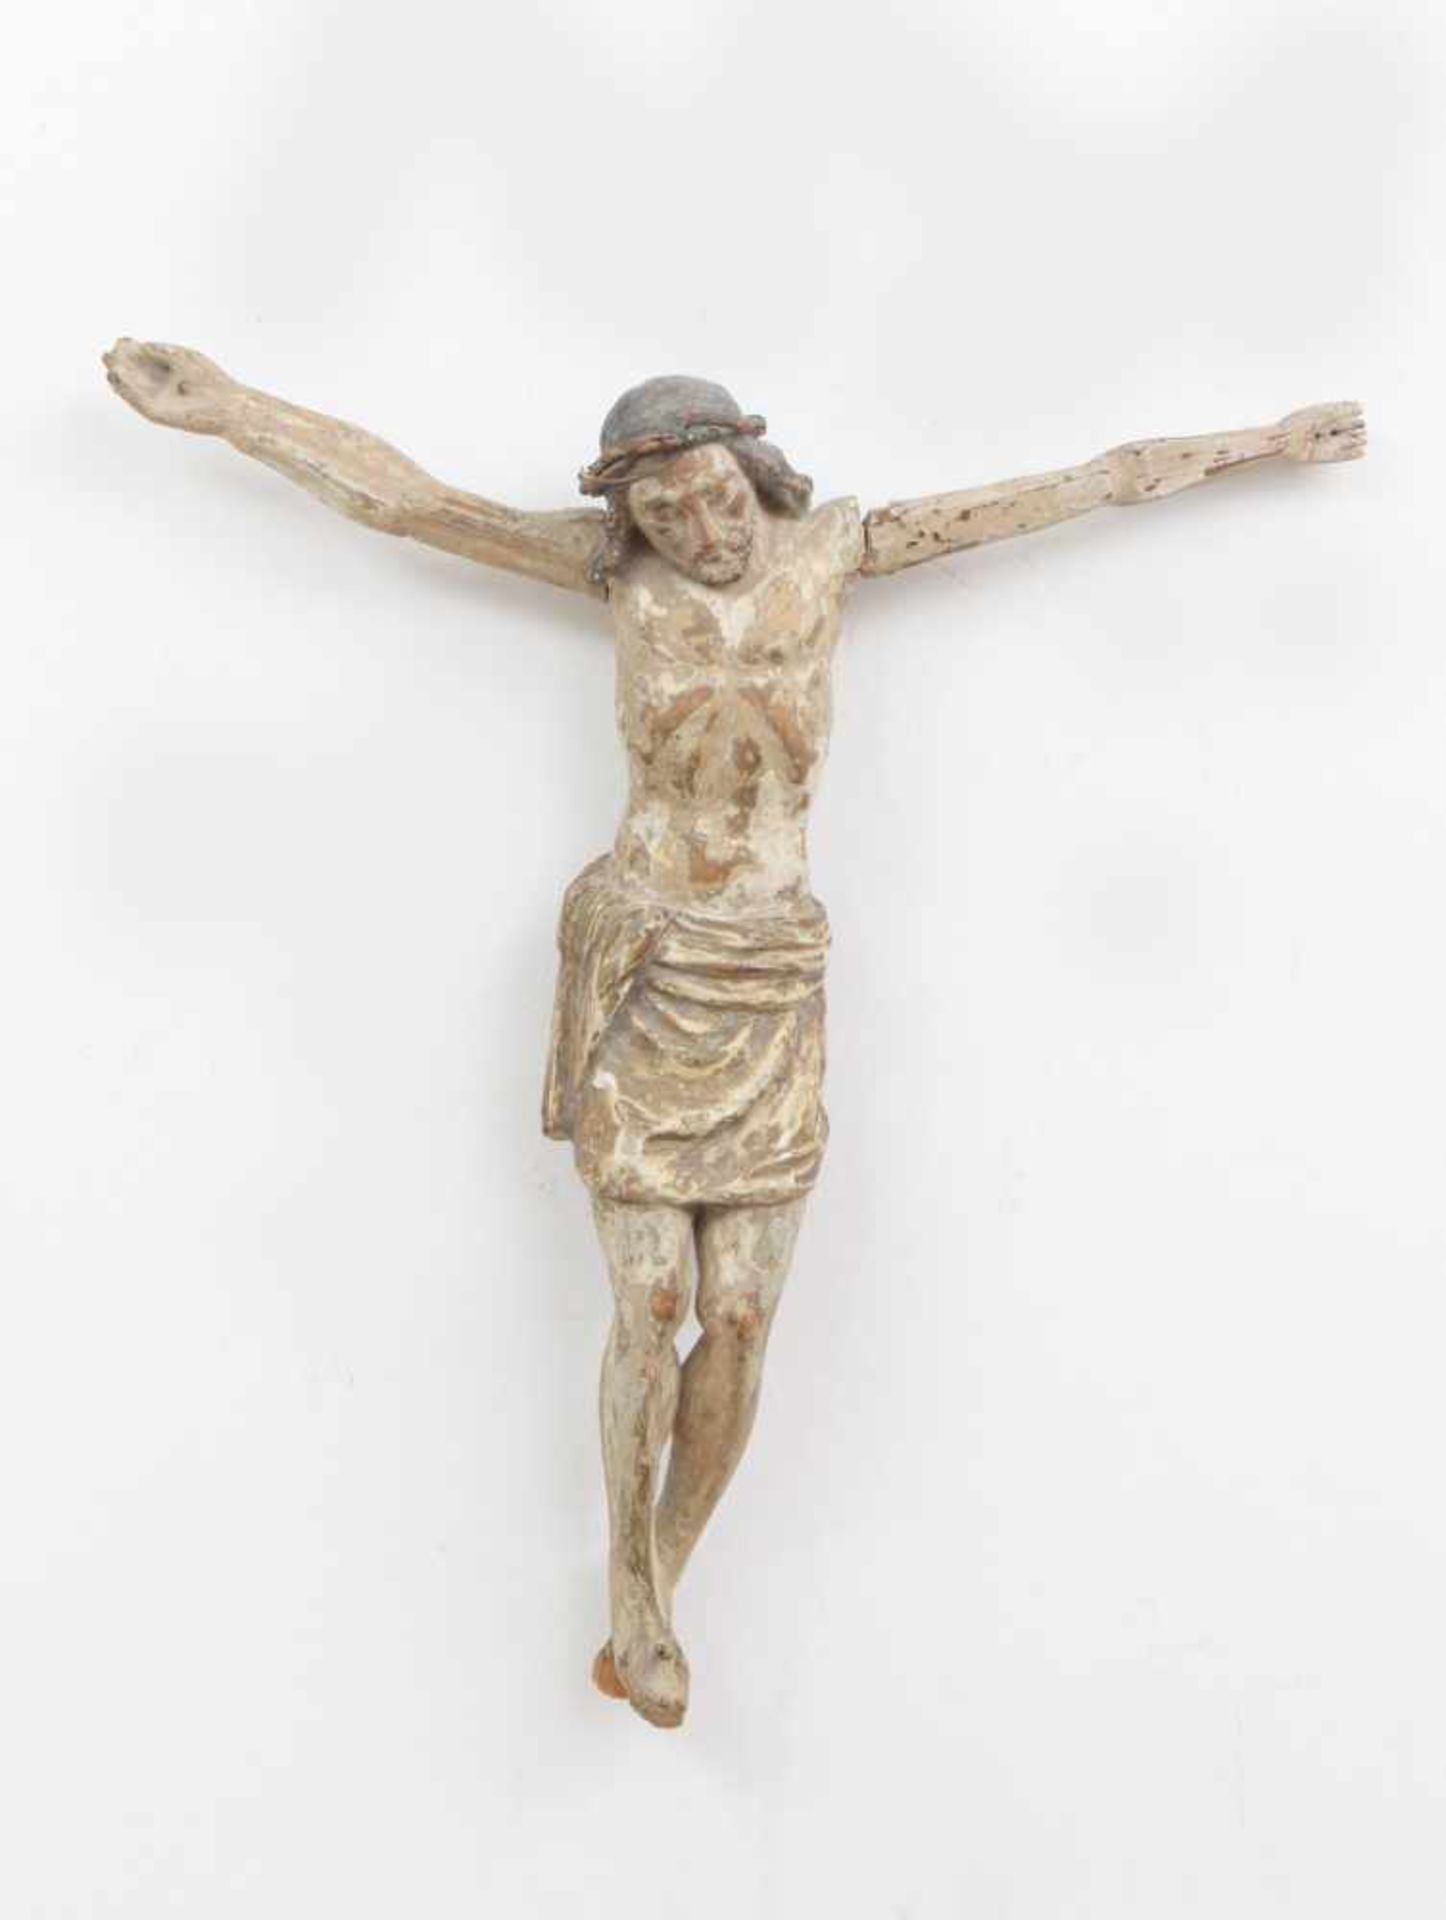 Kruzifix des 16./17. Jahrhundertswohl Lindenholz, geschnitzt, mit Resten alter heller Farbfassu